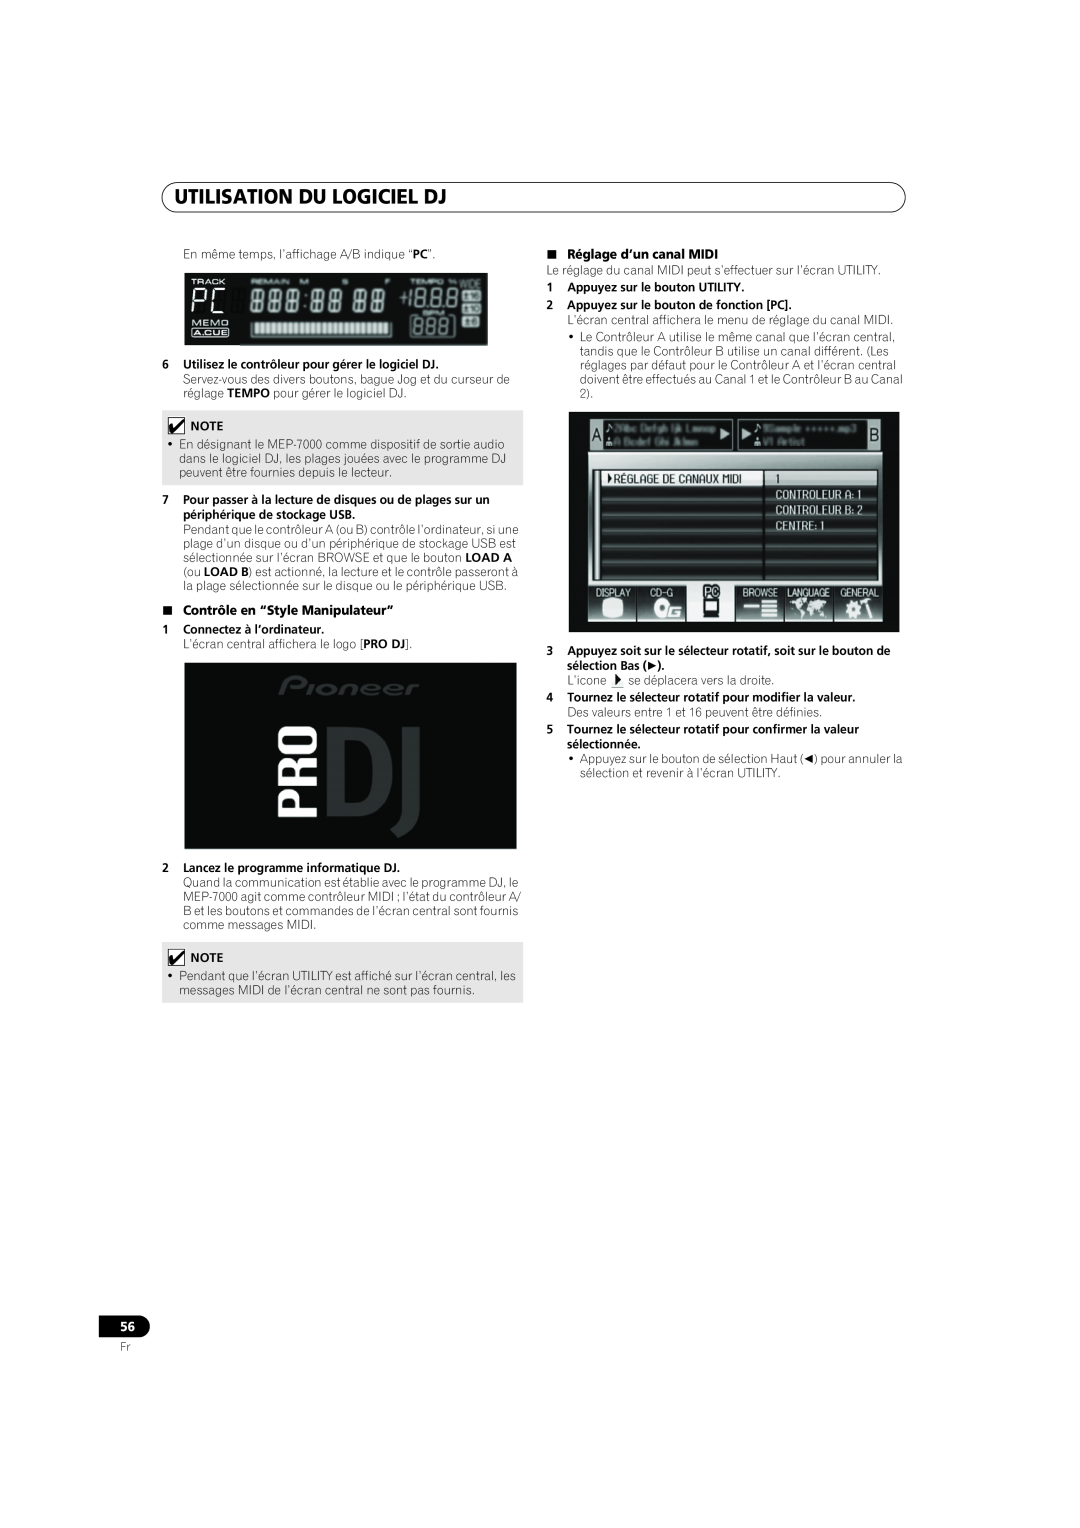 Pioneer MEP-7000 Utilisation Du Logiciel Dj, Contrôle en “Style Manipulateur”, Réglage d’un canal MIDI, sélection Bas  